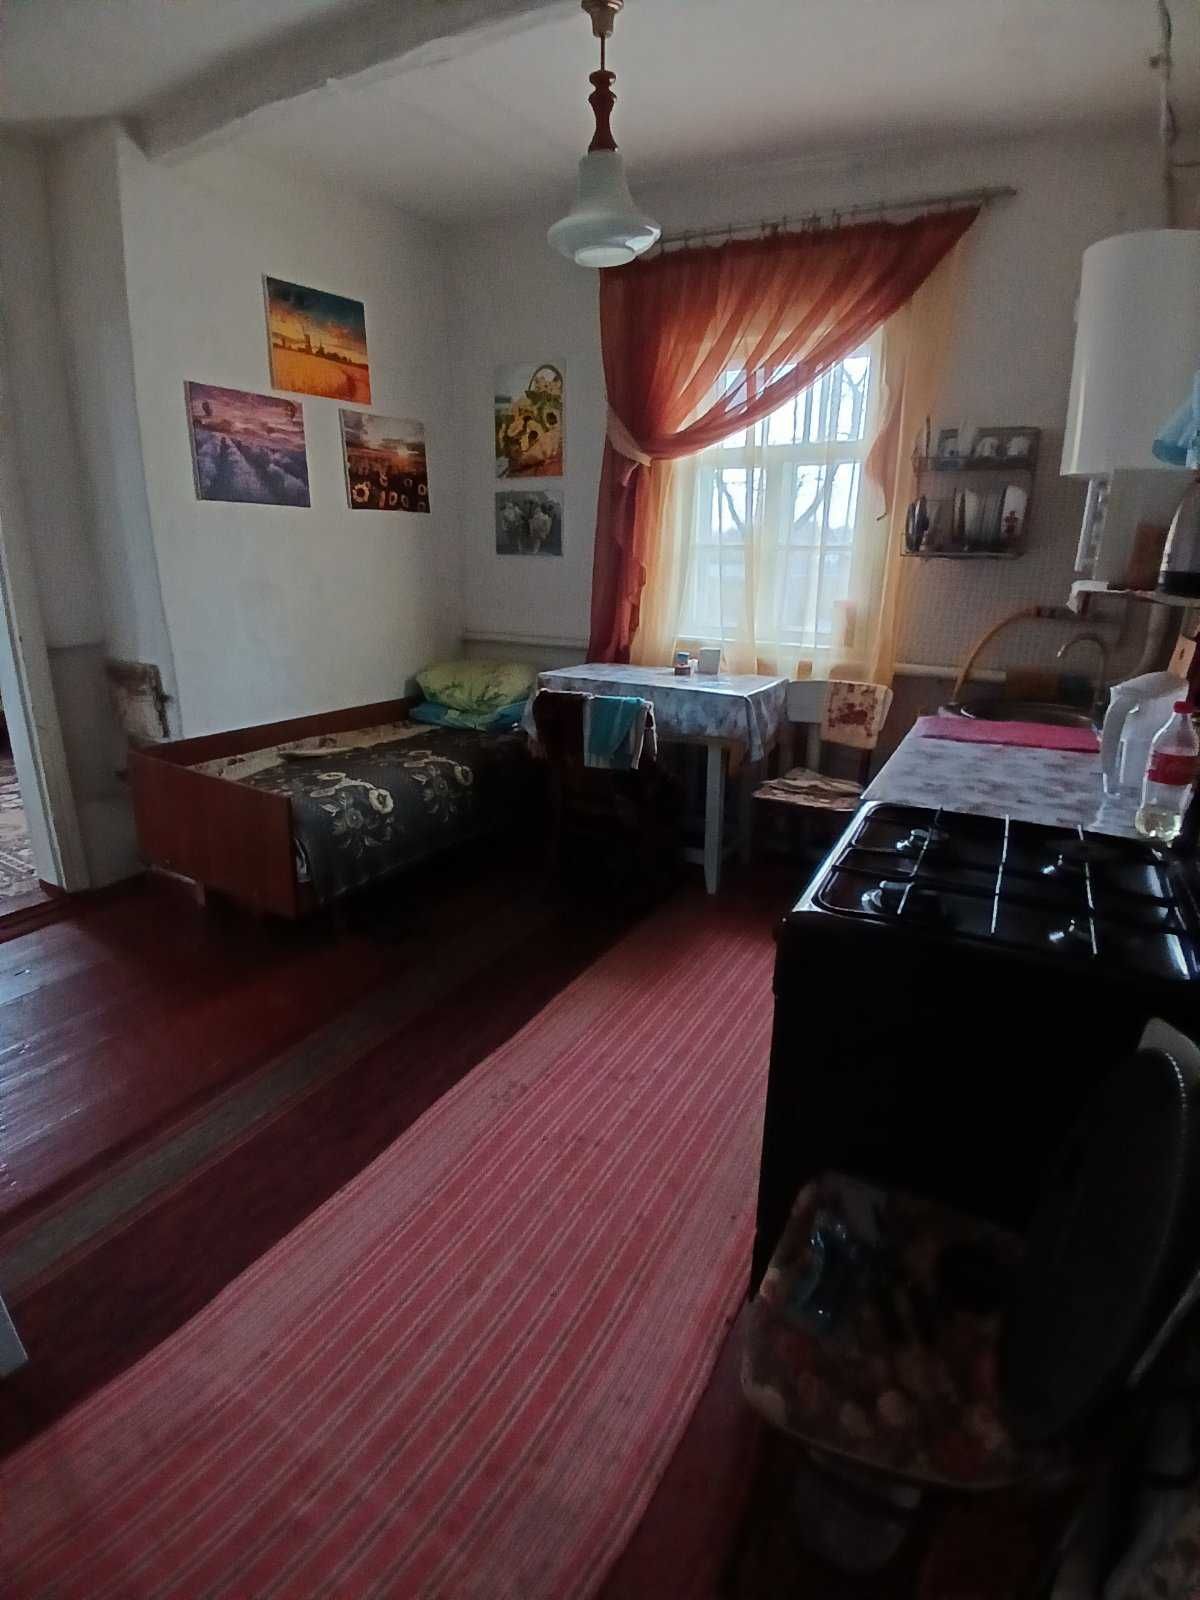 продається житловий будинок/дача у с. Гостра Могила, Київська область.